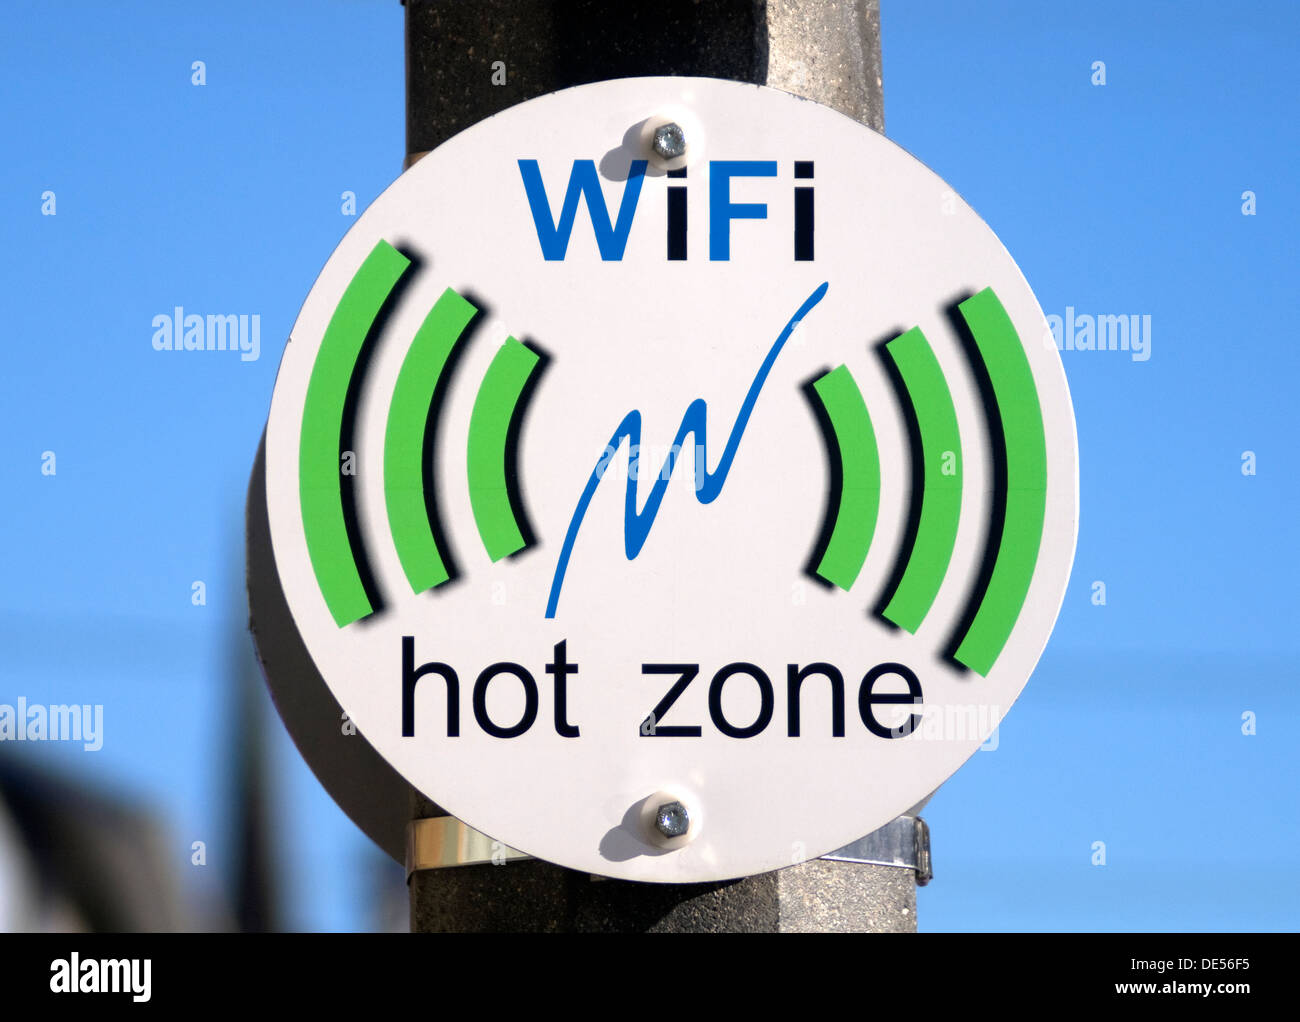 Segno WiFi zona calda di pubblico accesso connessione internet Foto Stock